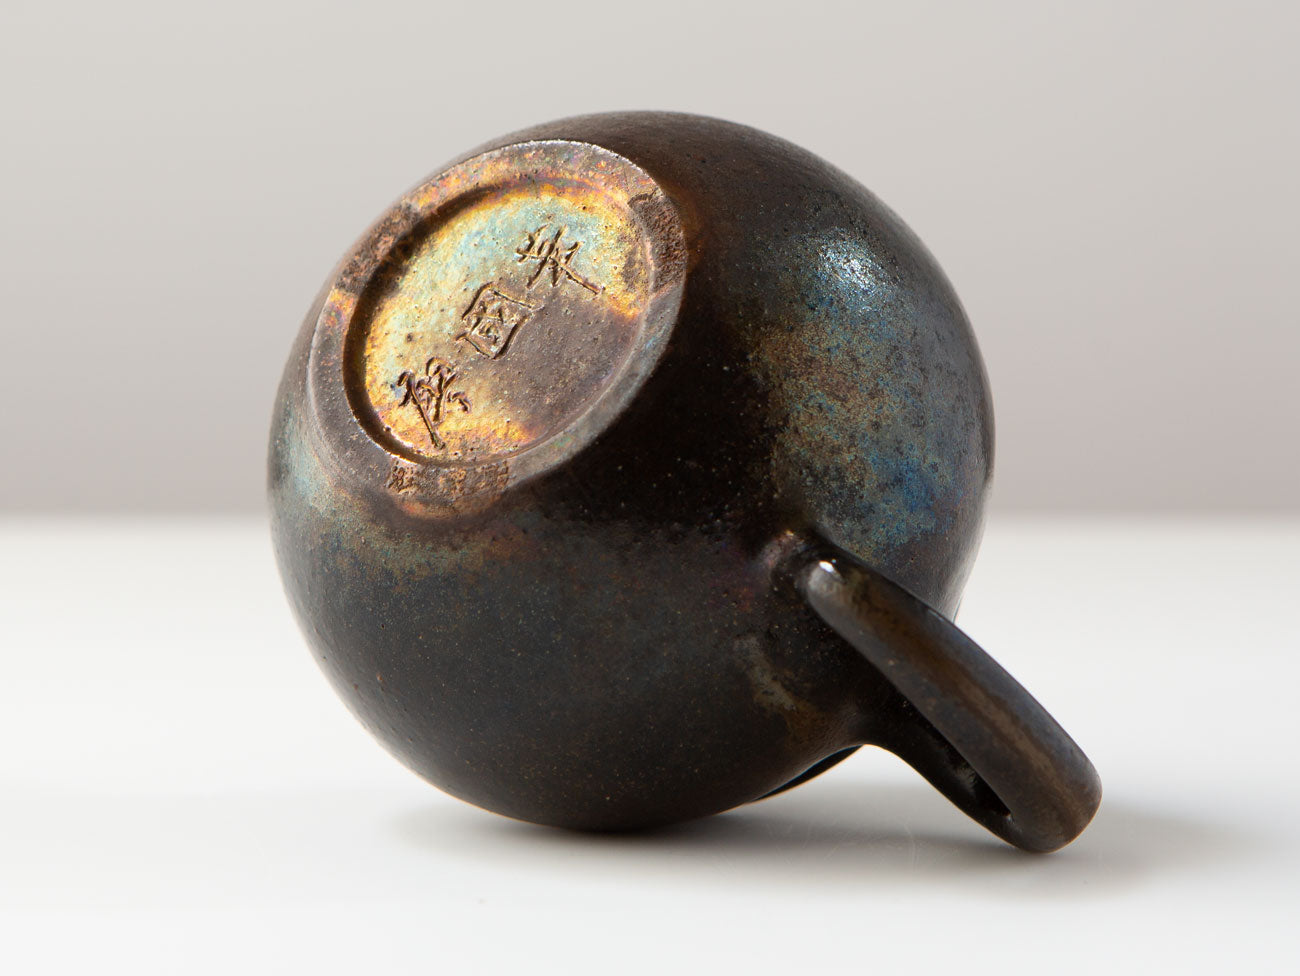 Wood-fired teapot, Liao Guo Hua.